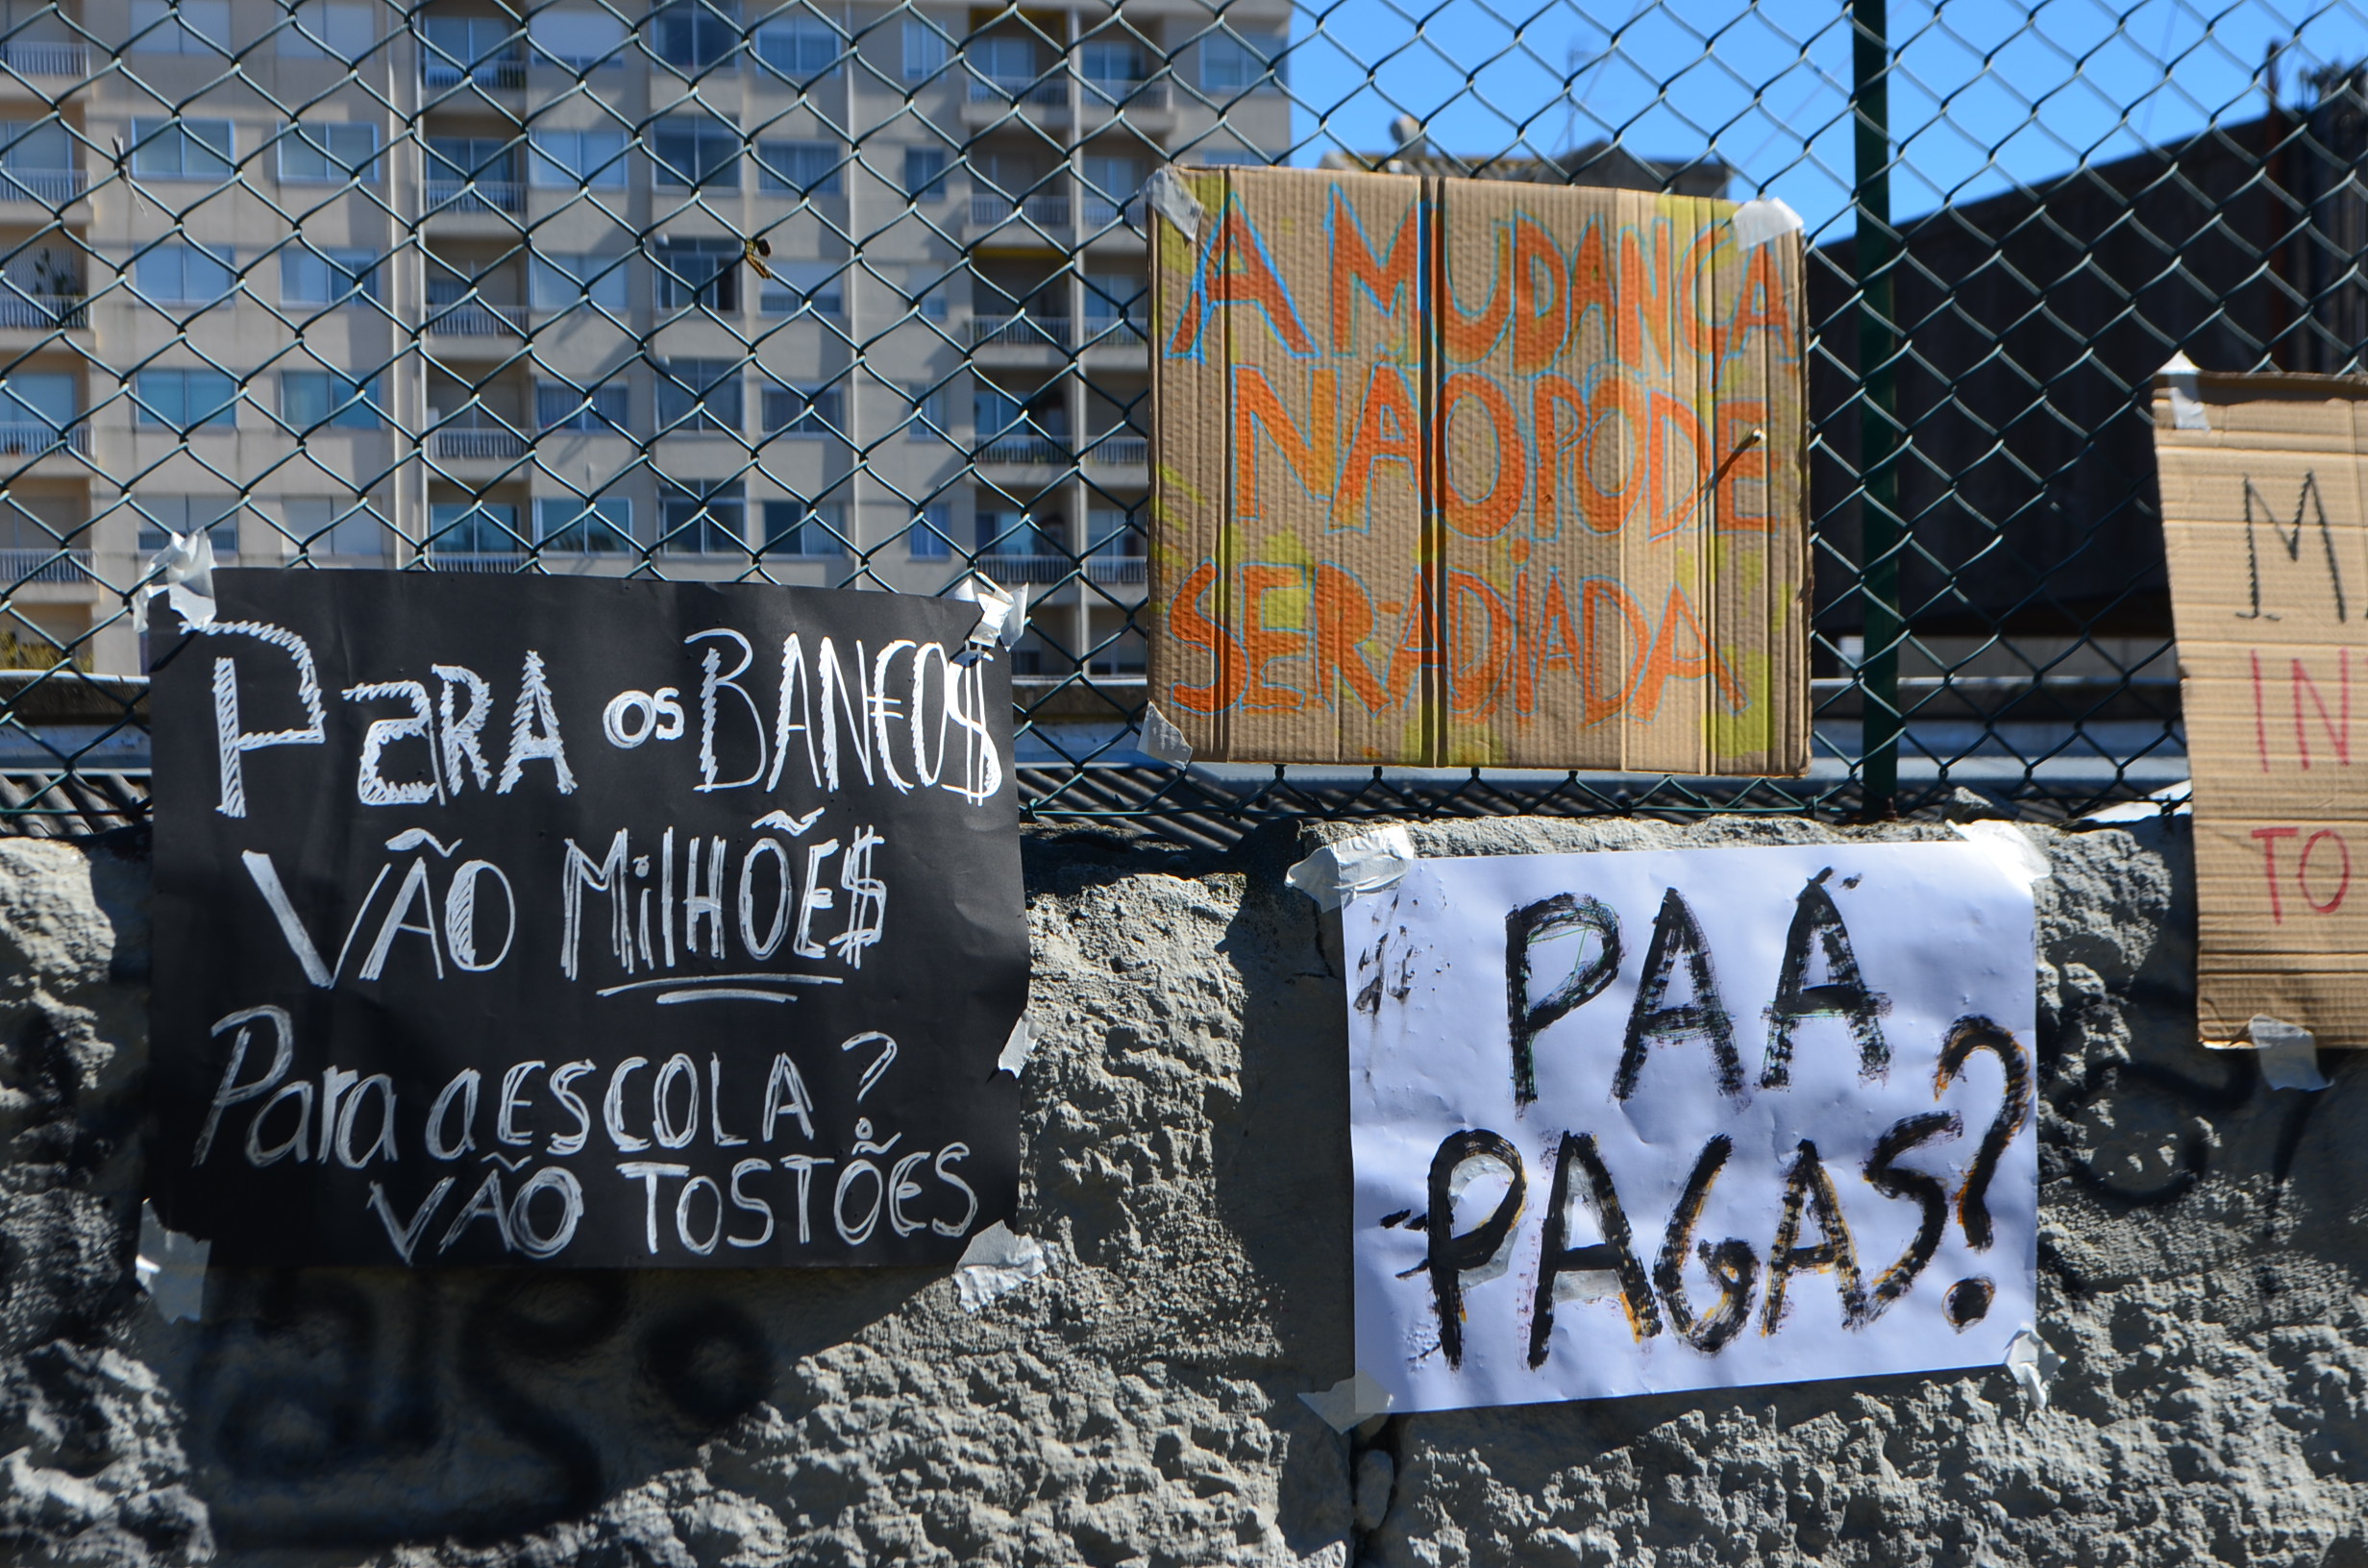 Os alunos da Escola Artística Soares dos Reis juntaram-se ao movimento nacional "É agora".